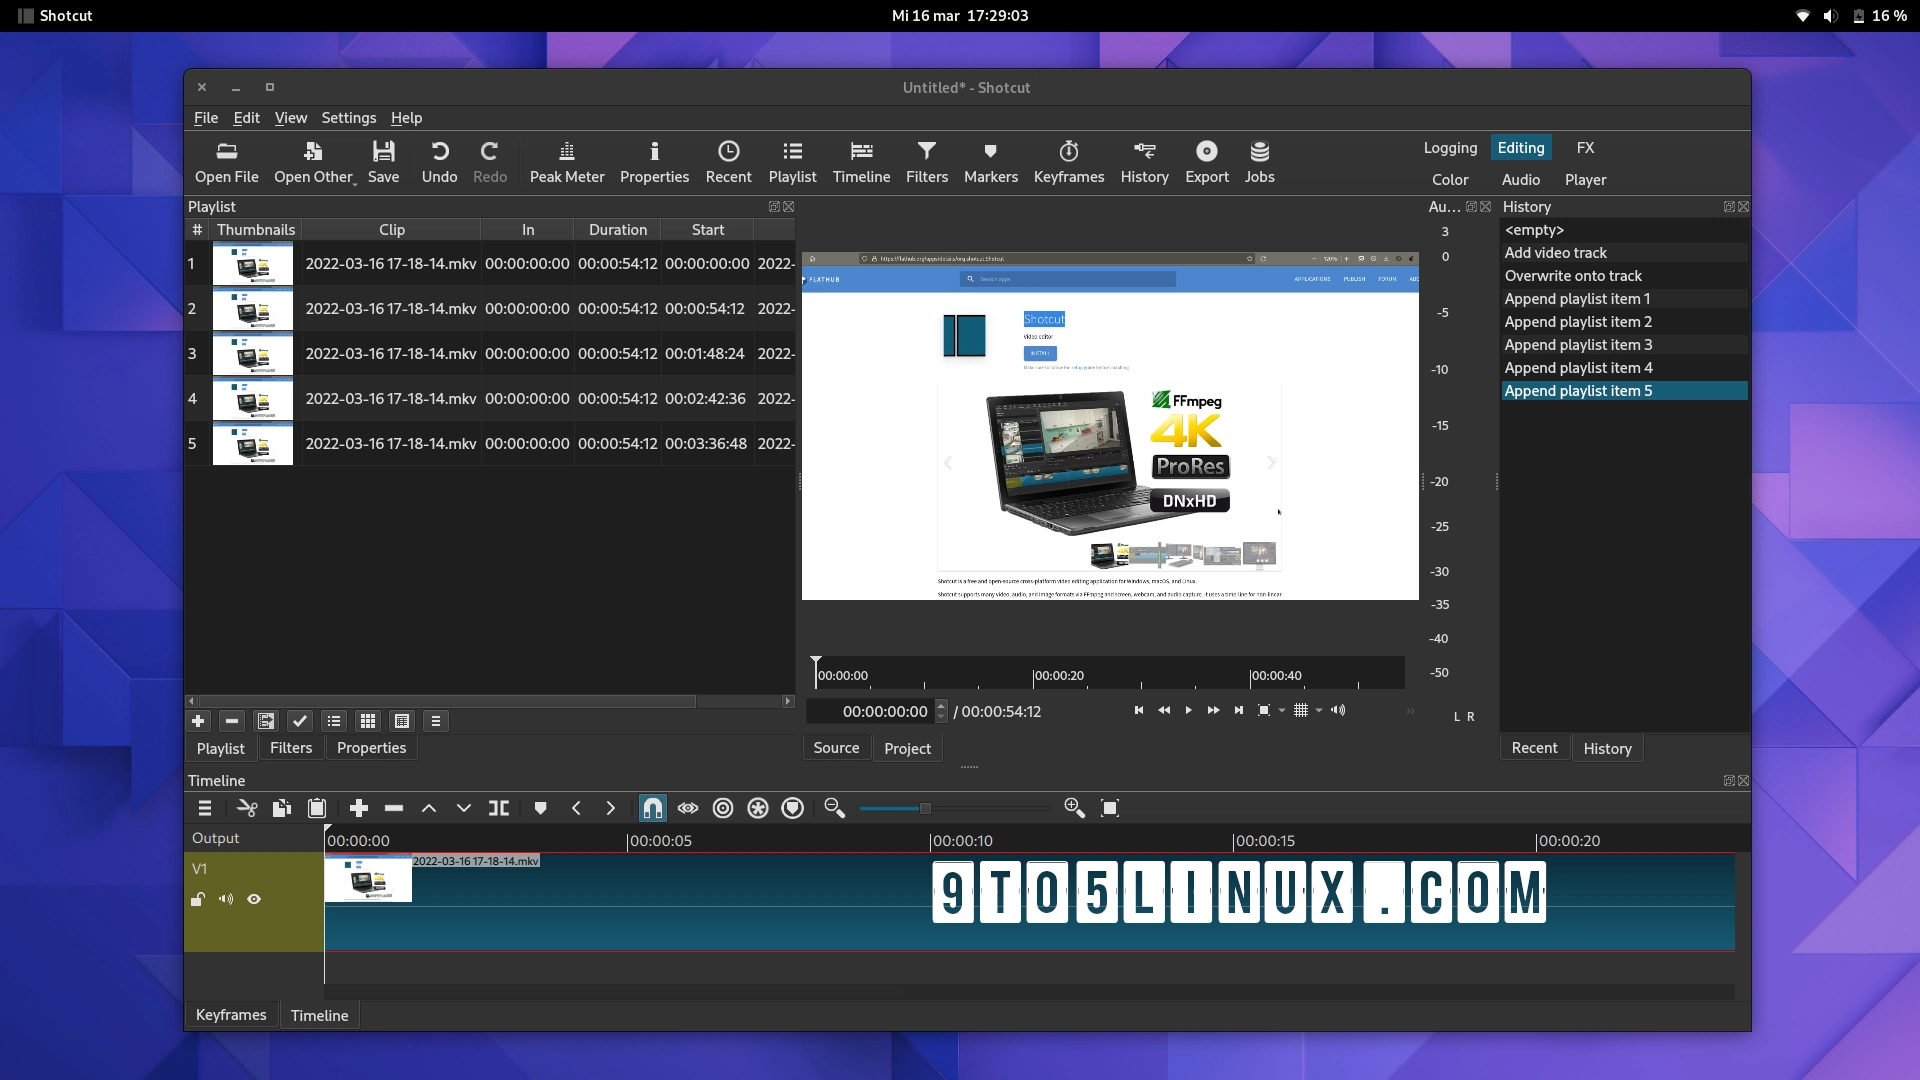 Flatpak App of the Week: Shotcut – Powerful and Versatile Video Editor